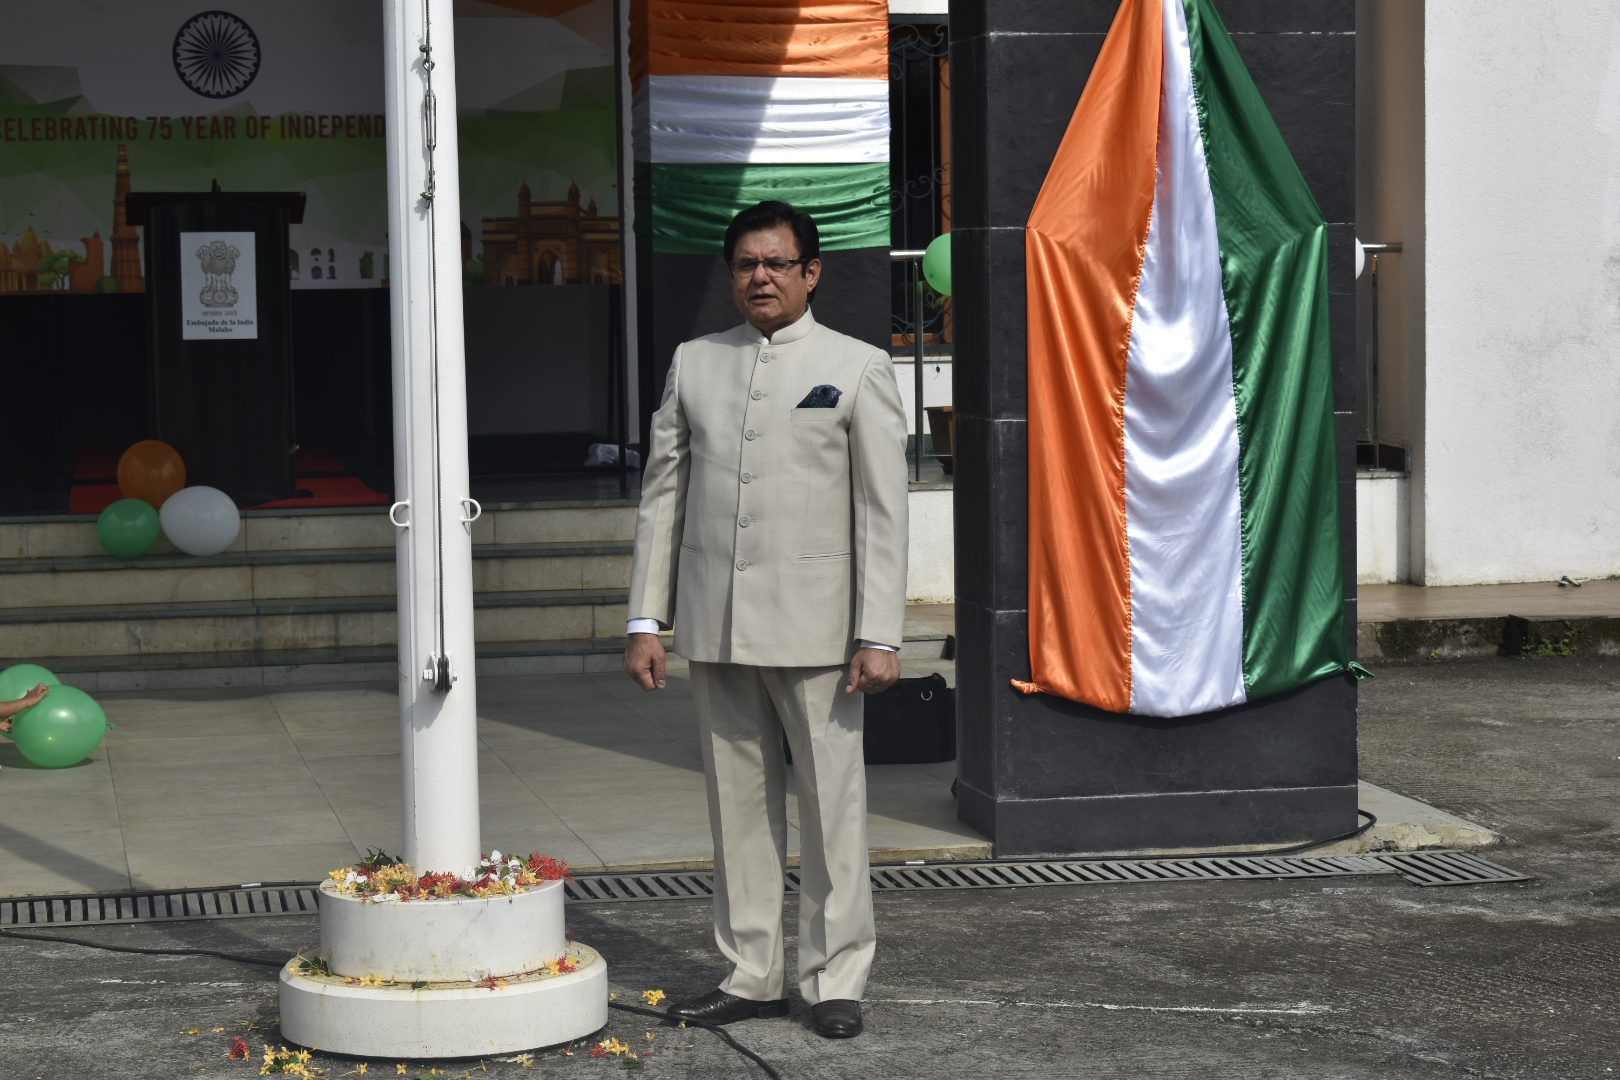 La embajada de la India celebra el 75° aniversario de la independencia de su país